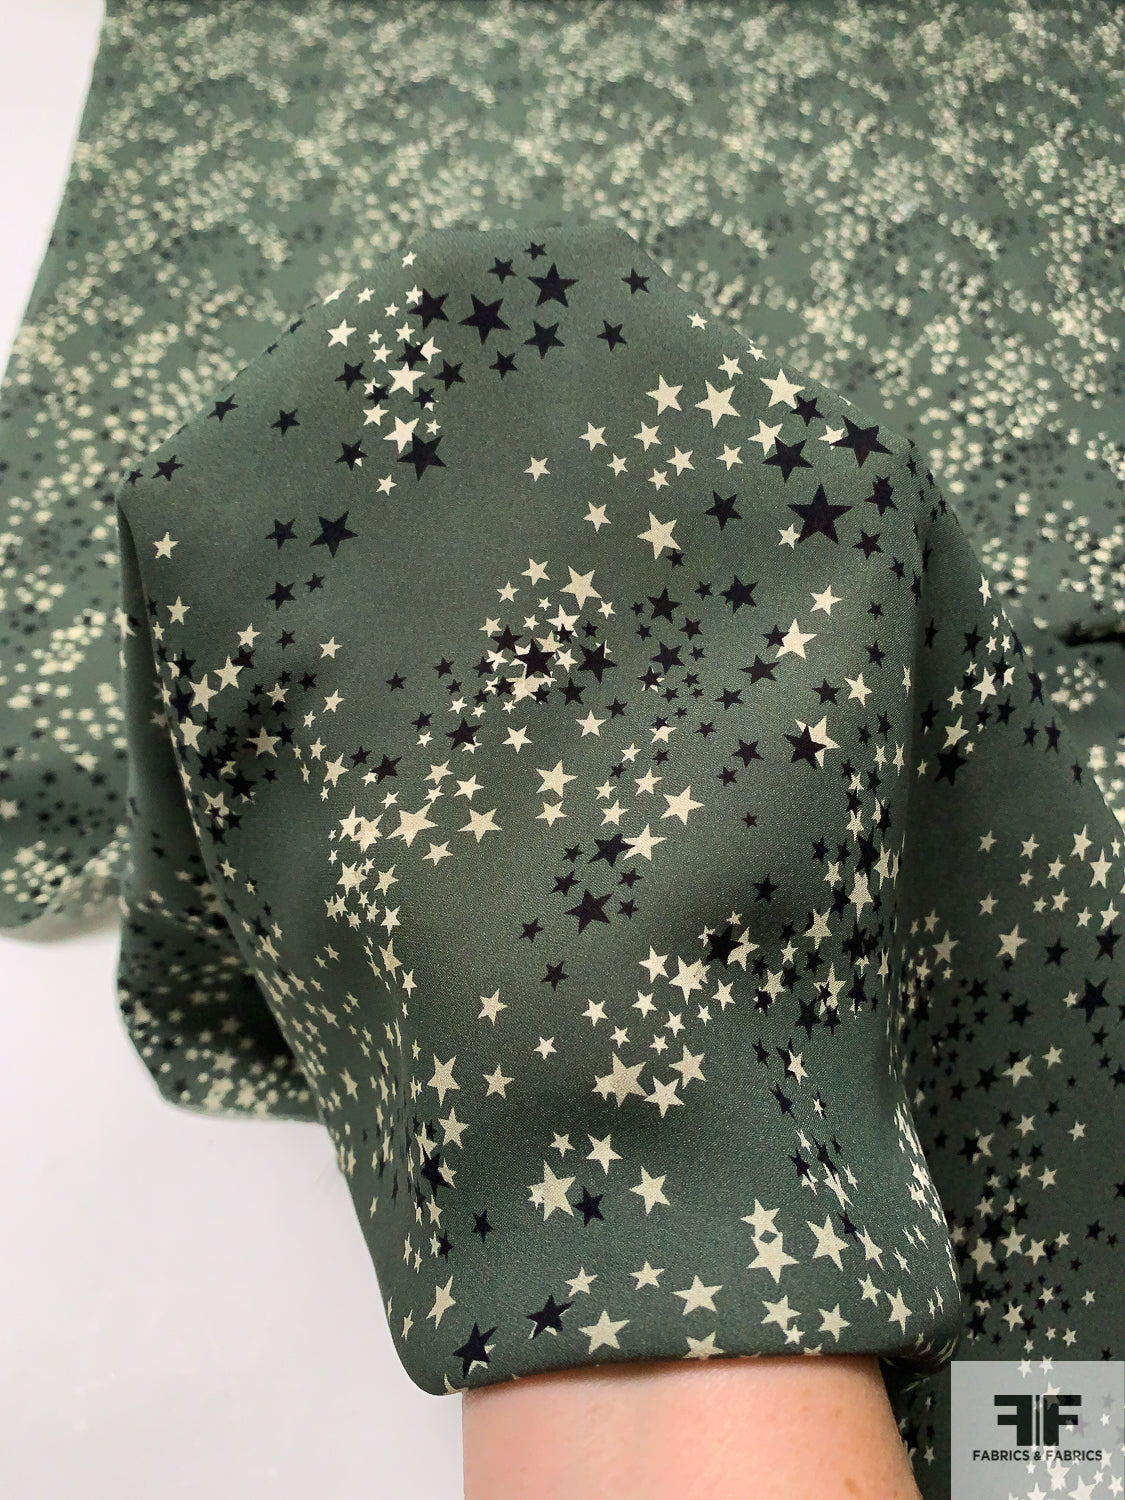 Stars Printed Silk Georgette - Army Green / Black / Beige